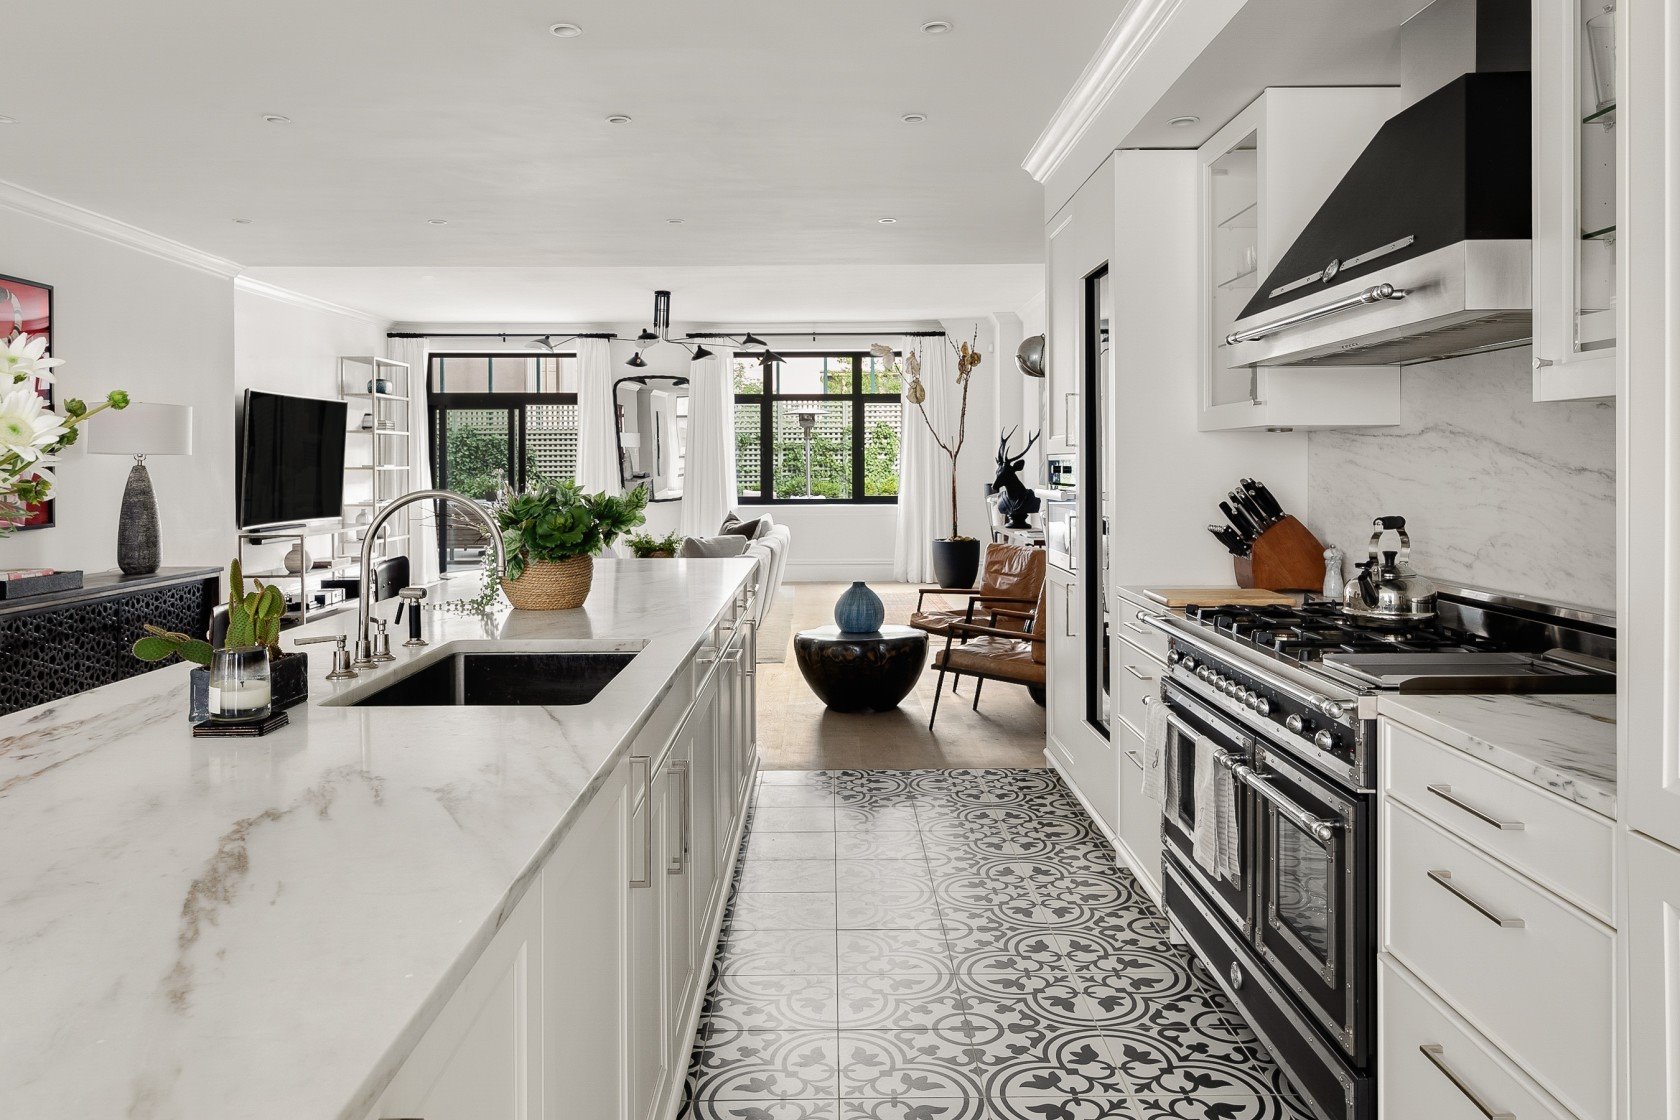 Cocina con suelo de mosaico y electrodomesticos de estilo vintage de la casa de Joe Jonas y Sophie Turner